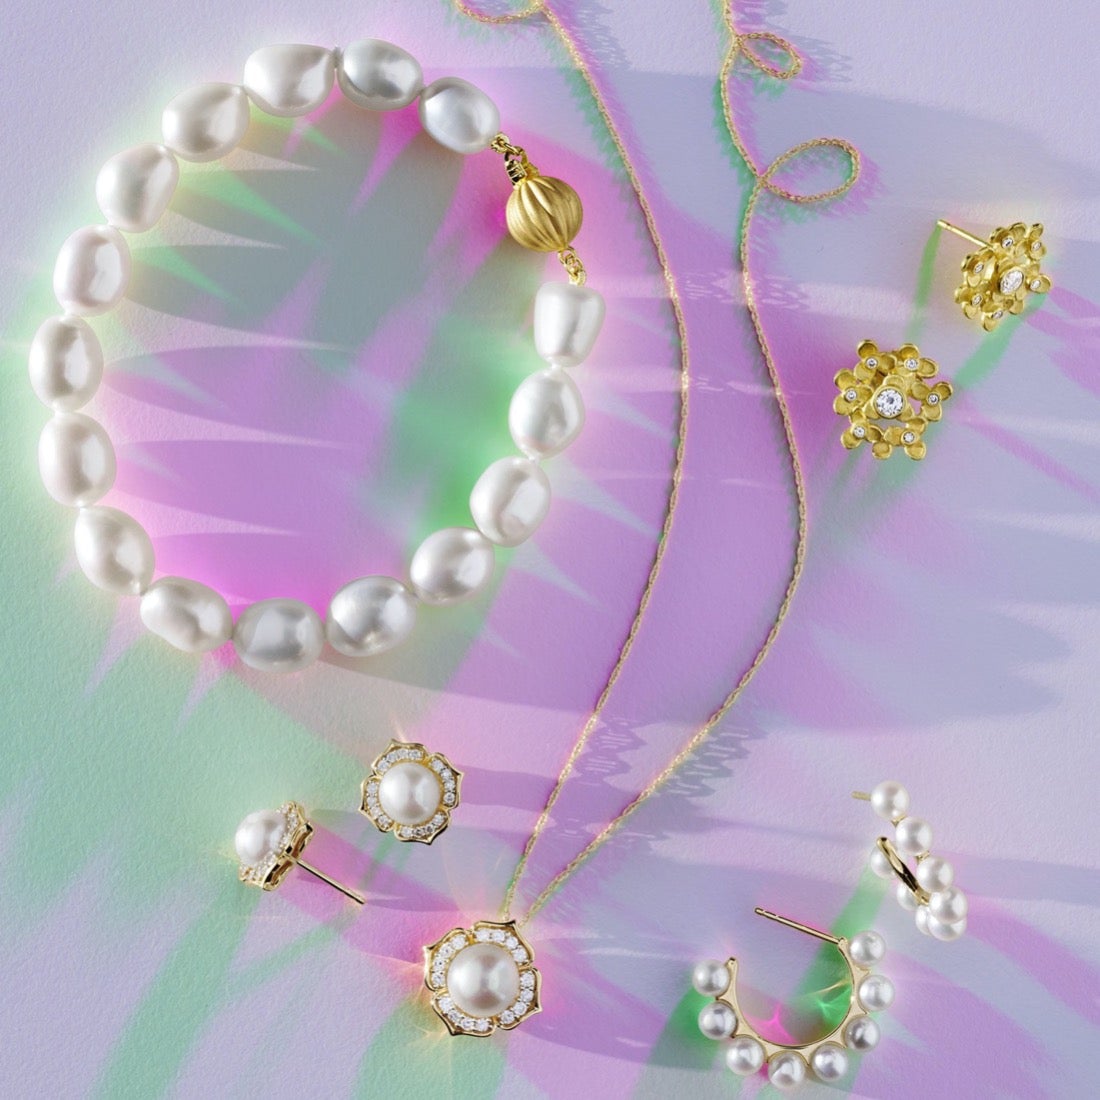 Baroque White Pearl & Gold Bracelet